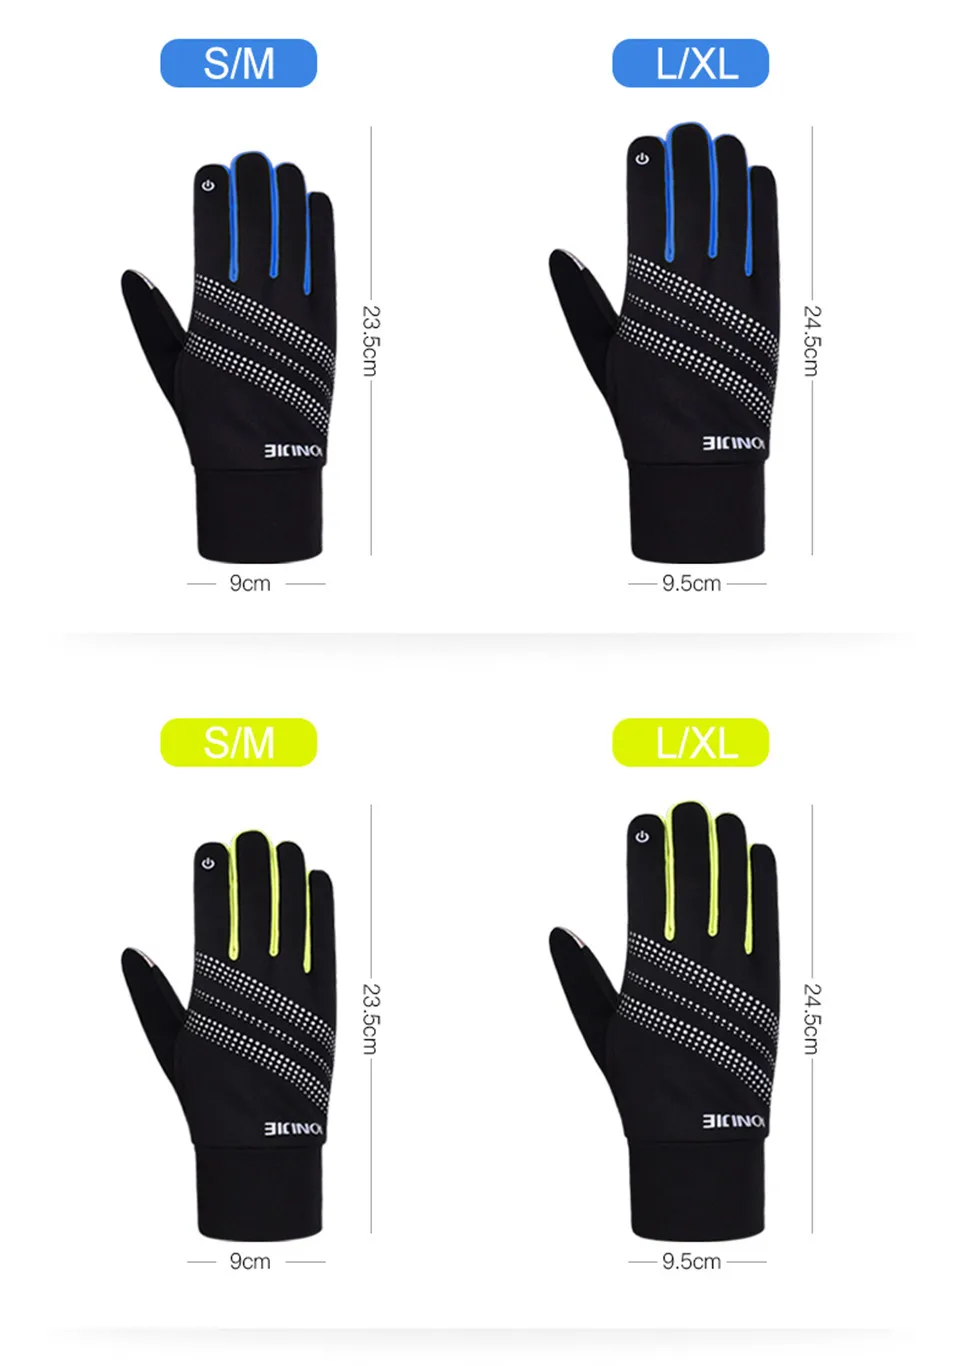 AONIJIE Спортивные перчатки холодной зимы Полный пальцев перчатки Экран touch Прихватки для мангала теплые ветрозащитные Пеший Туризм